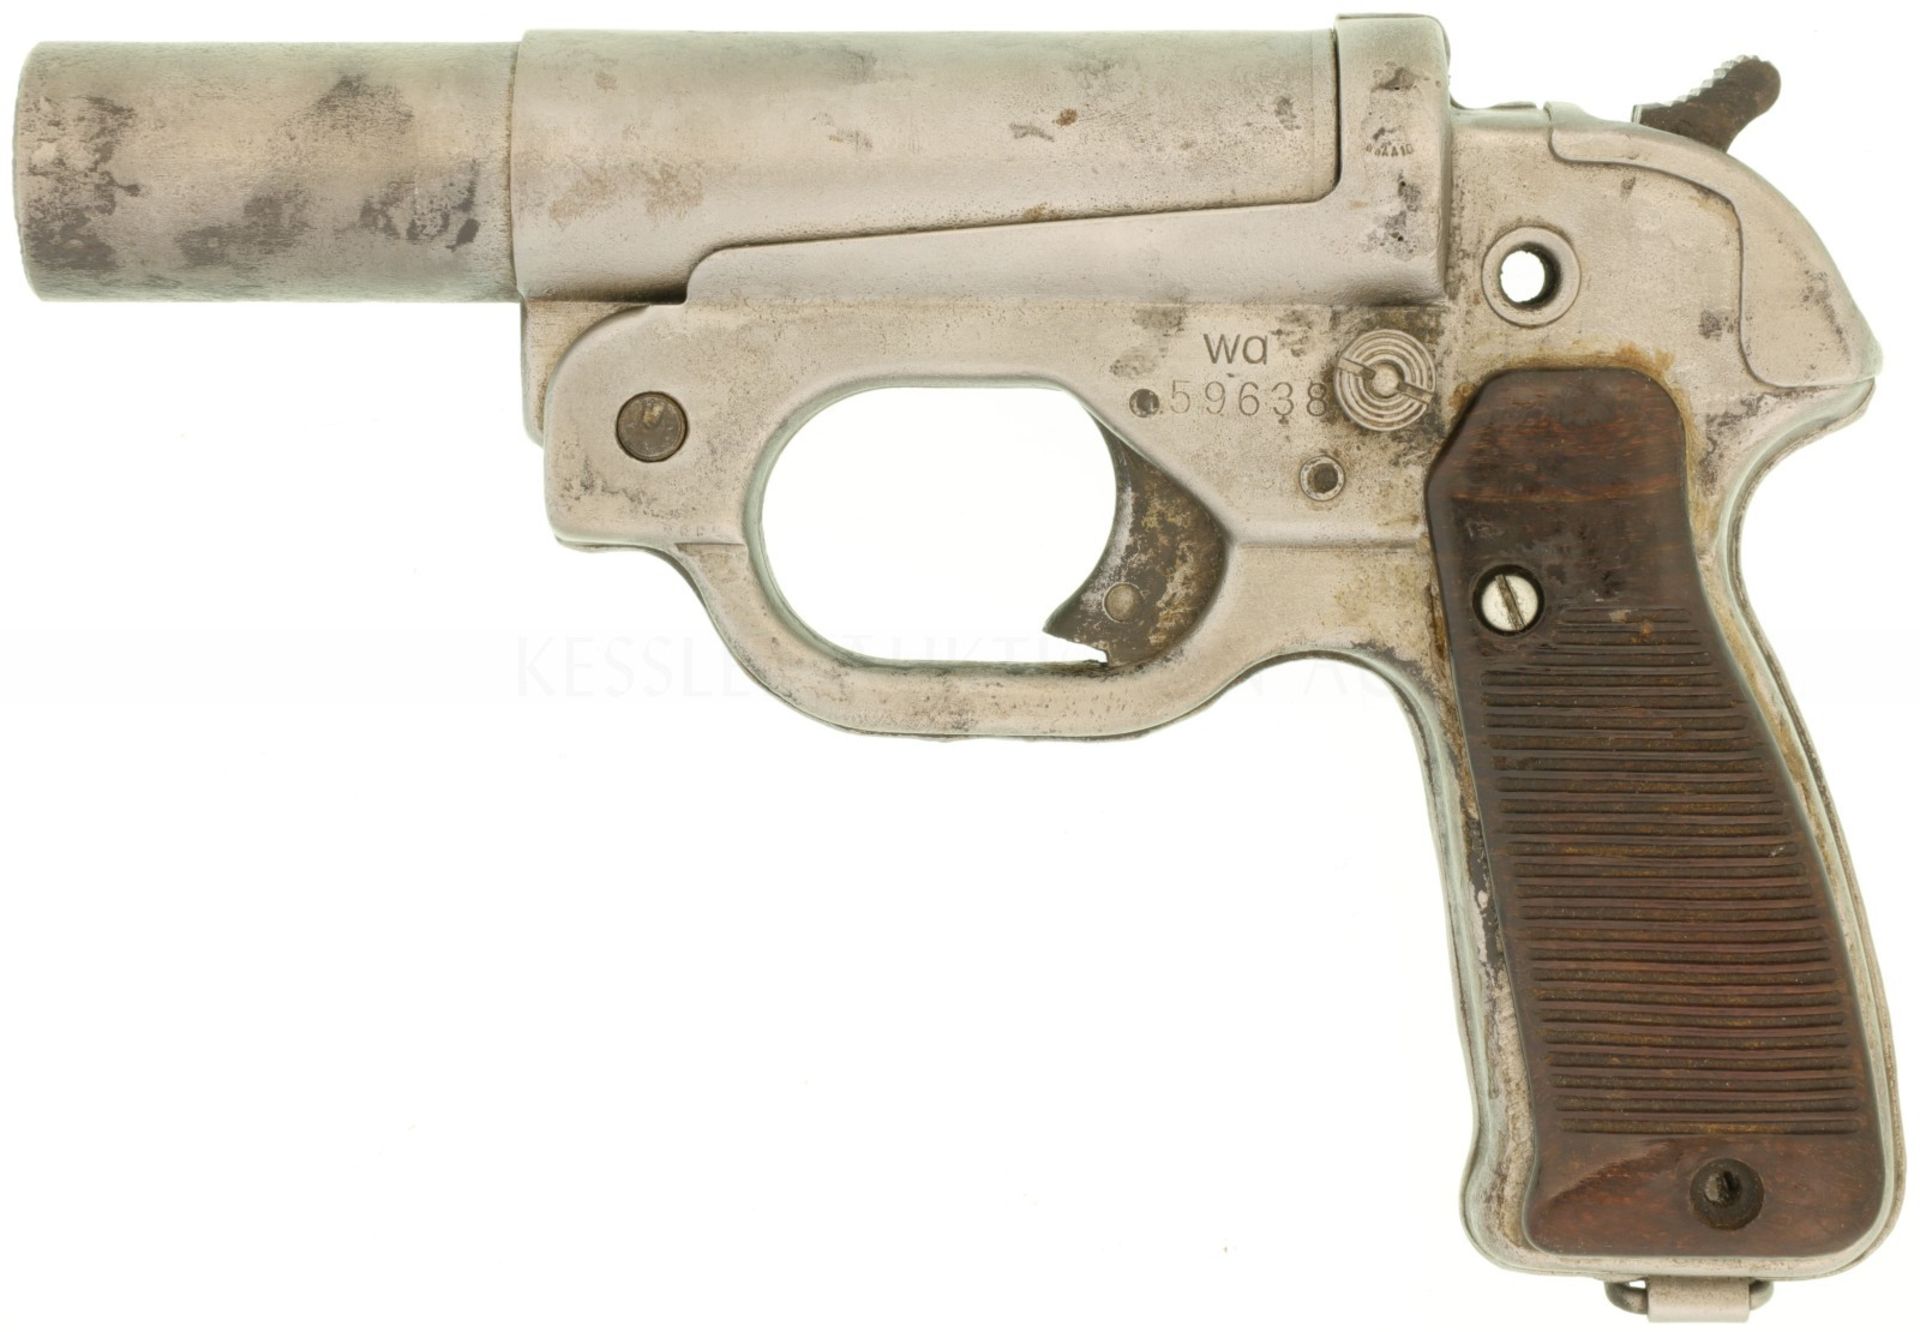 Signalpistole, Modell LP42, Kal. 4